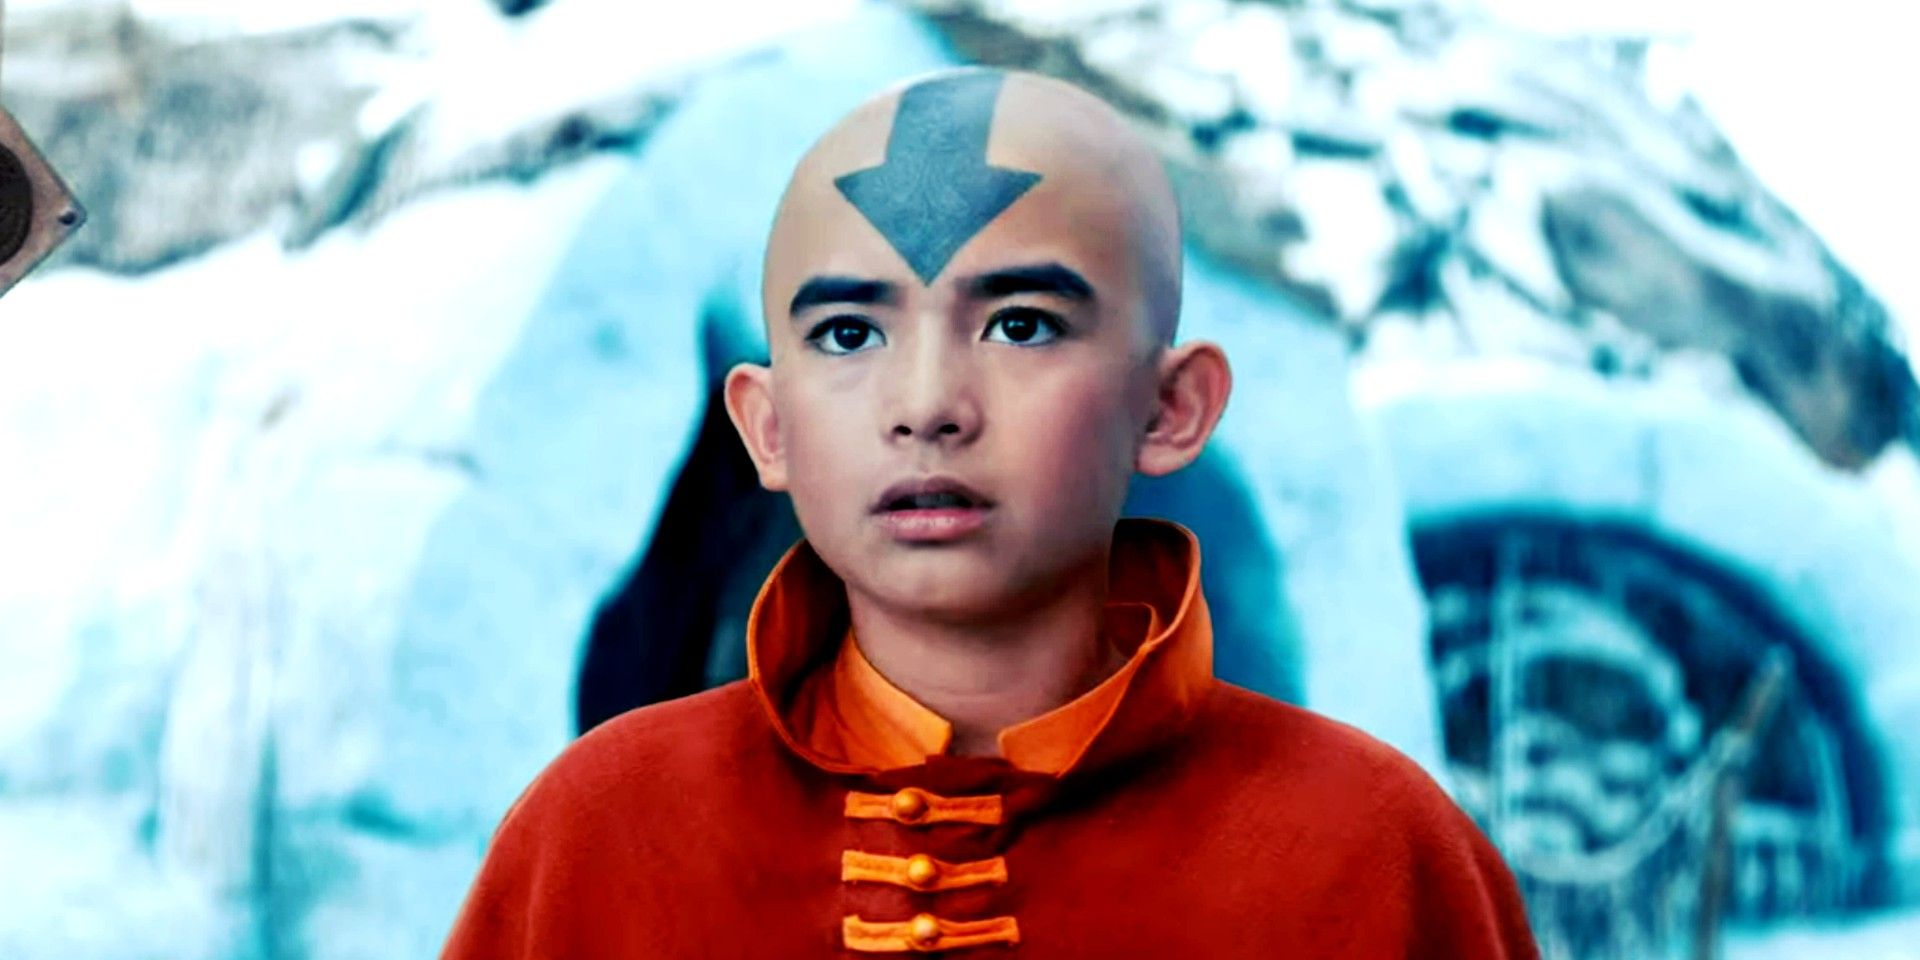 Avatar de Netflix: la audiencia de The Last Airbender disminuyó en la semana 2, pero el programa animado aumentó